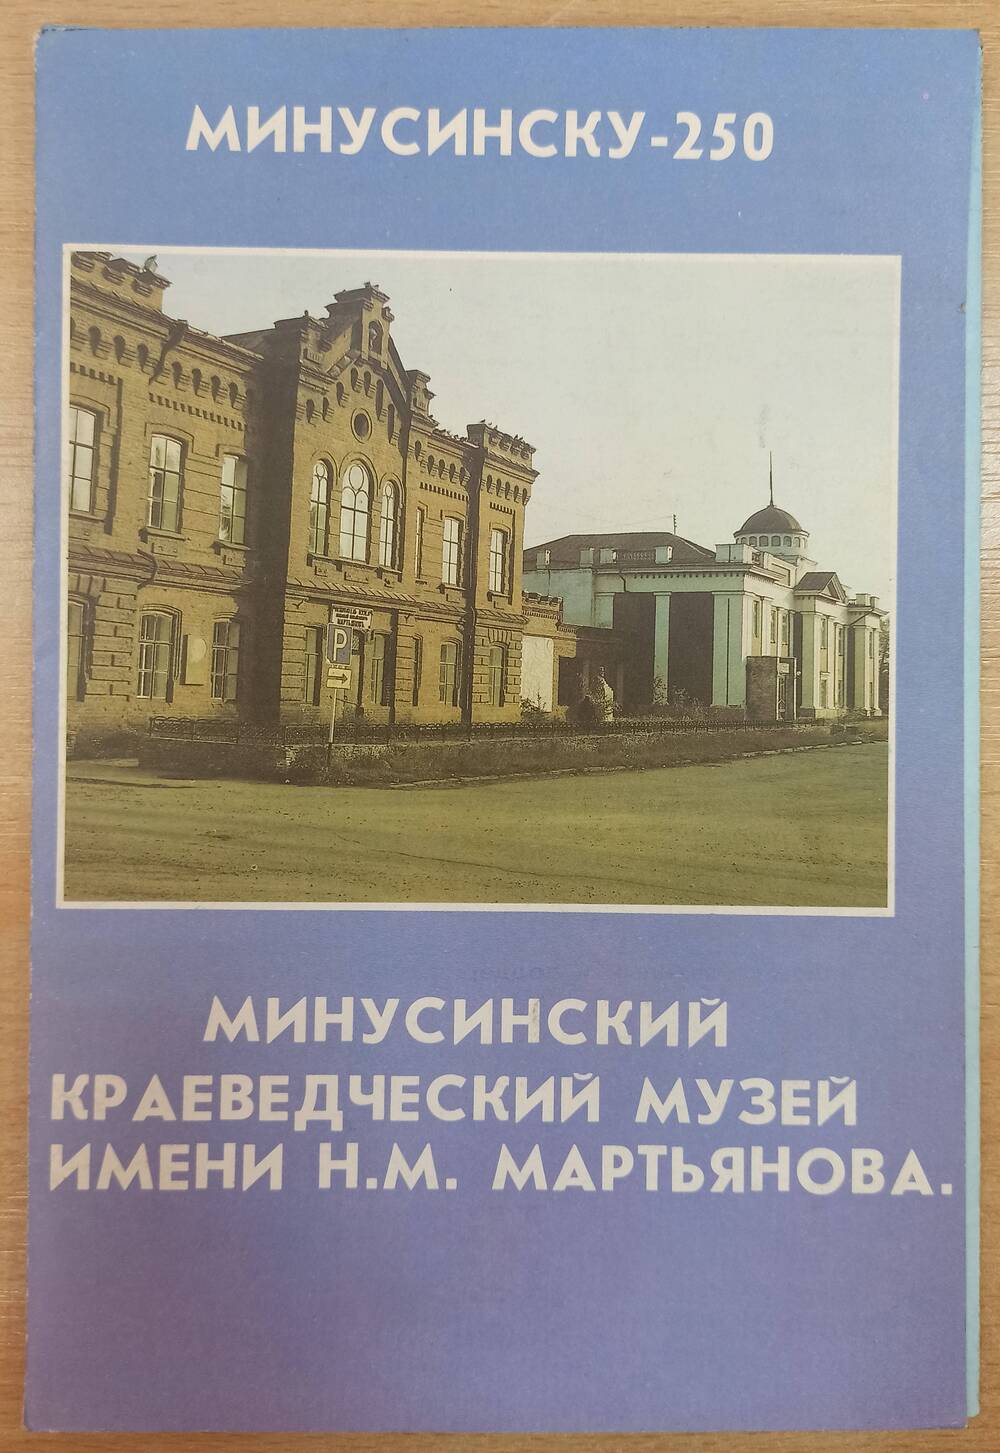 Буклет Минусинску - 250 Минусинский краеведческий музей имени Н.М. Мартьянова. Имеется вкладыш.